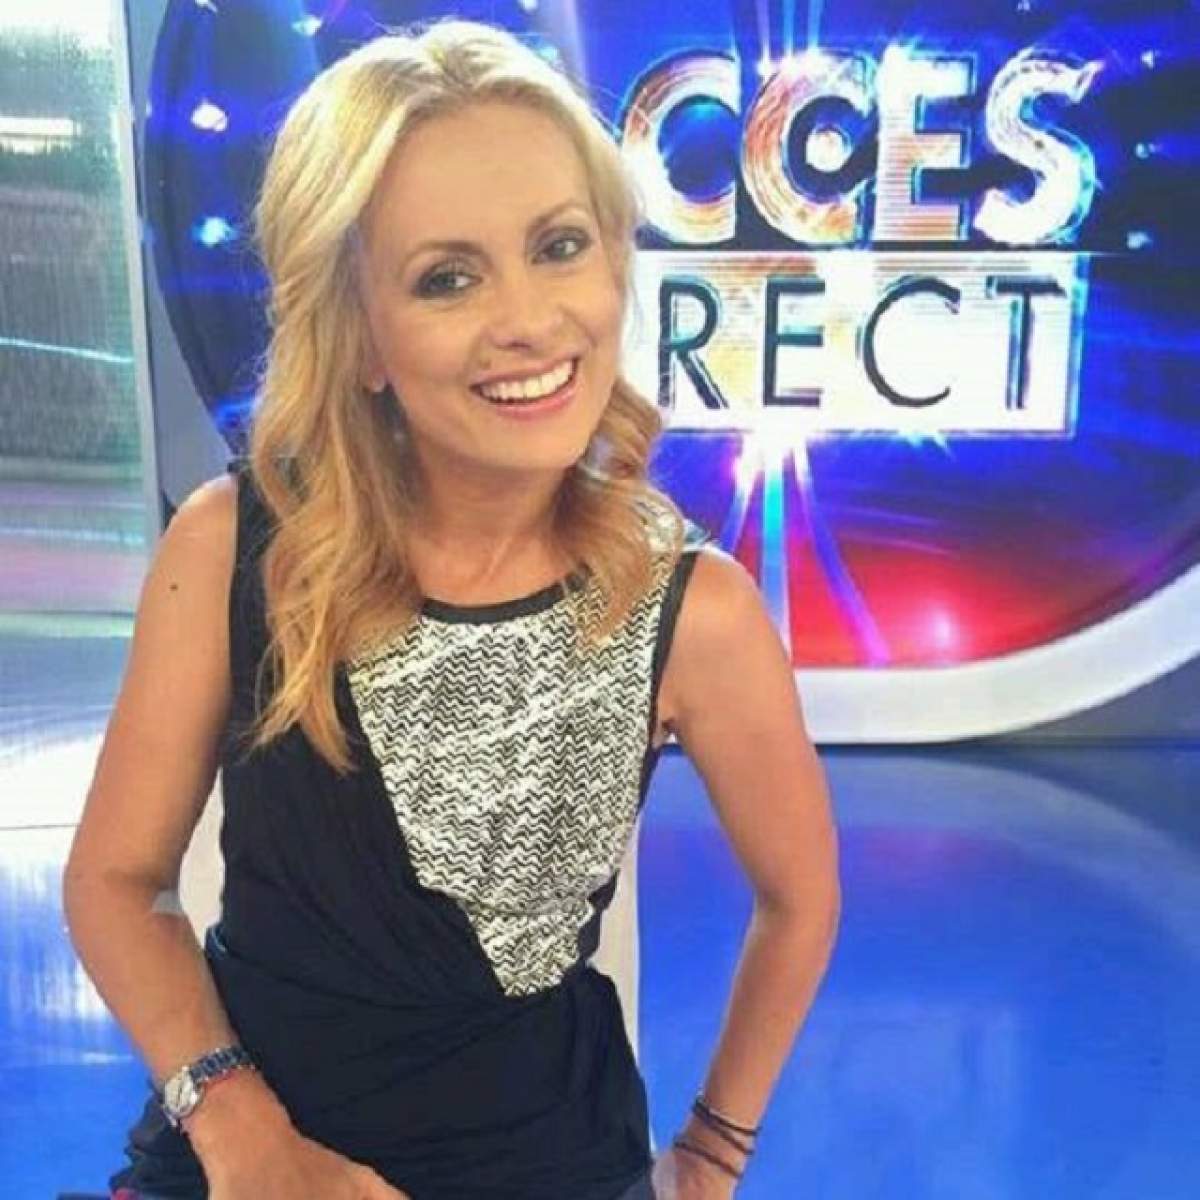 Emisiunea "Acces Direct", locul 1 în topul preferinţelor telespectatorilor! Simona Gherghe şi-a spulberat concurenţa